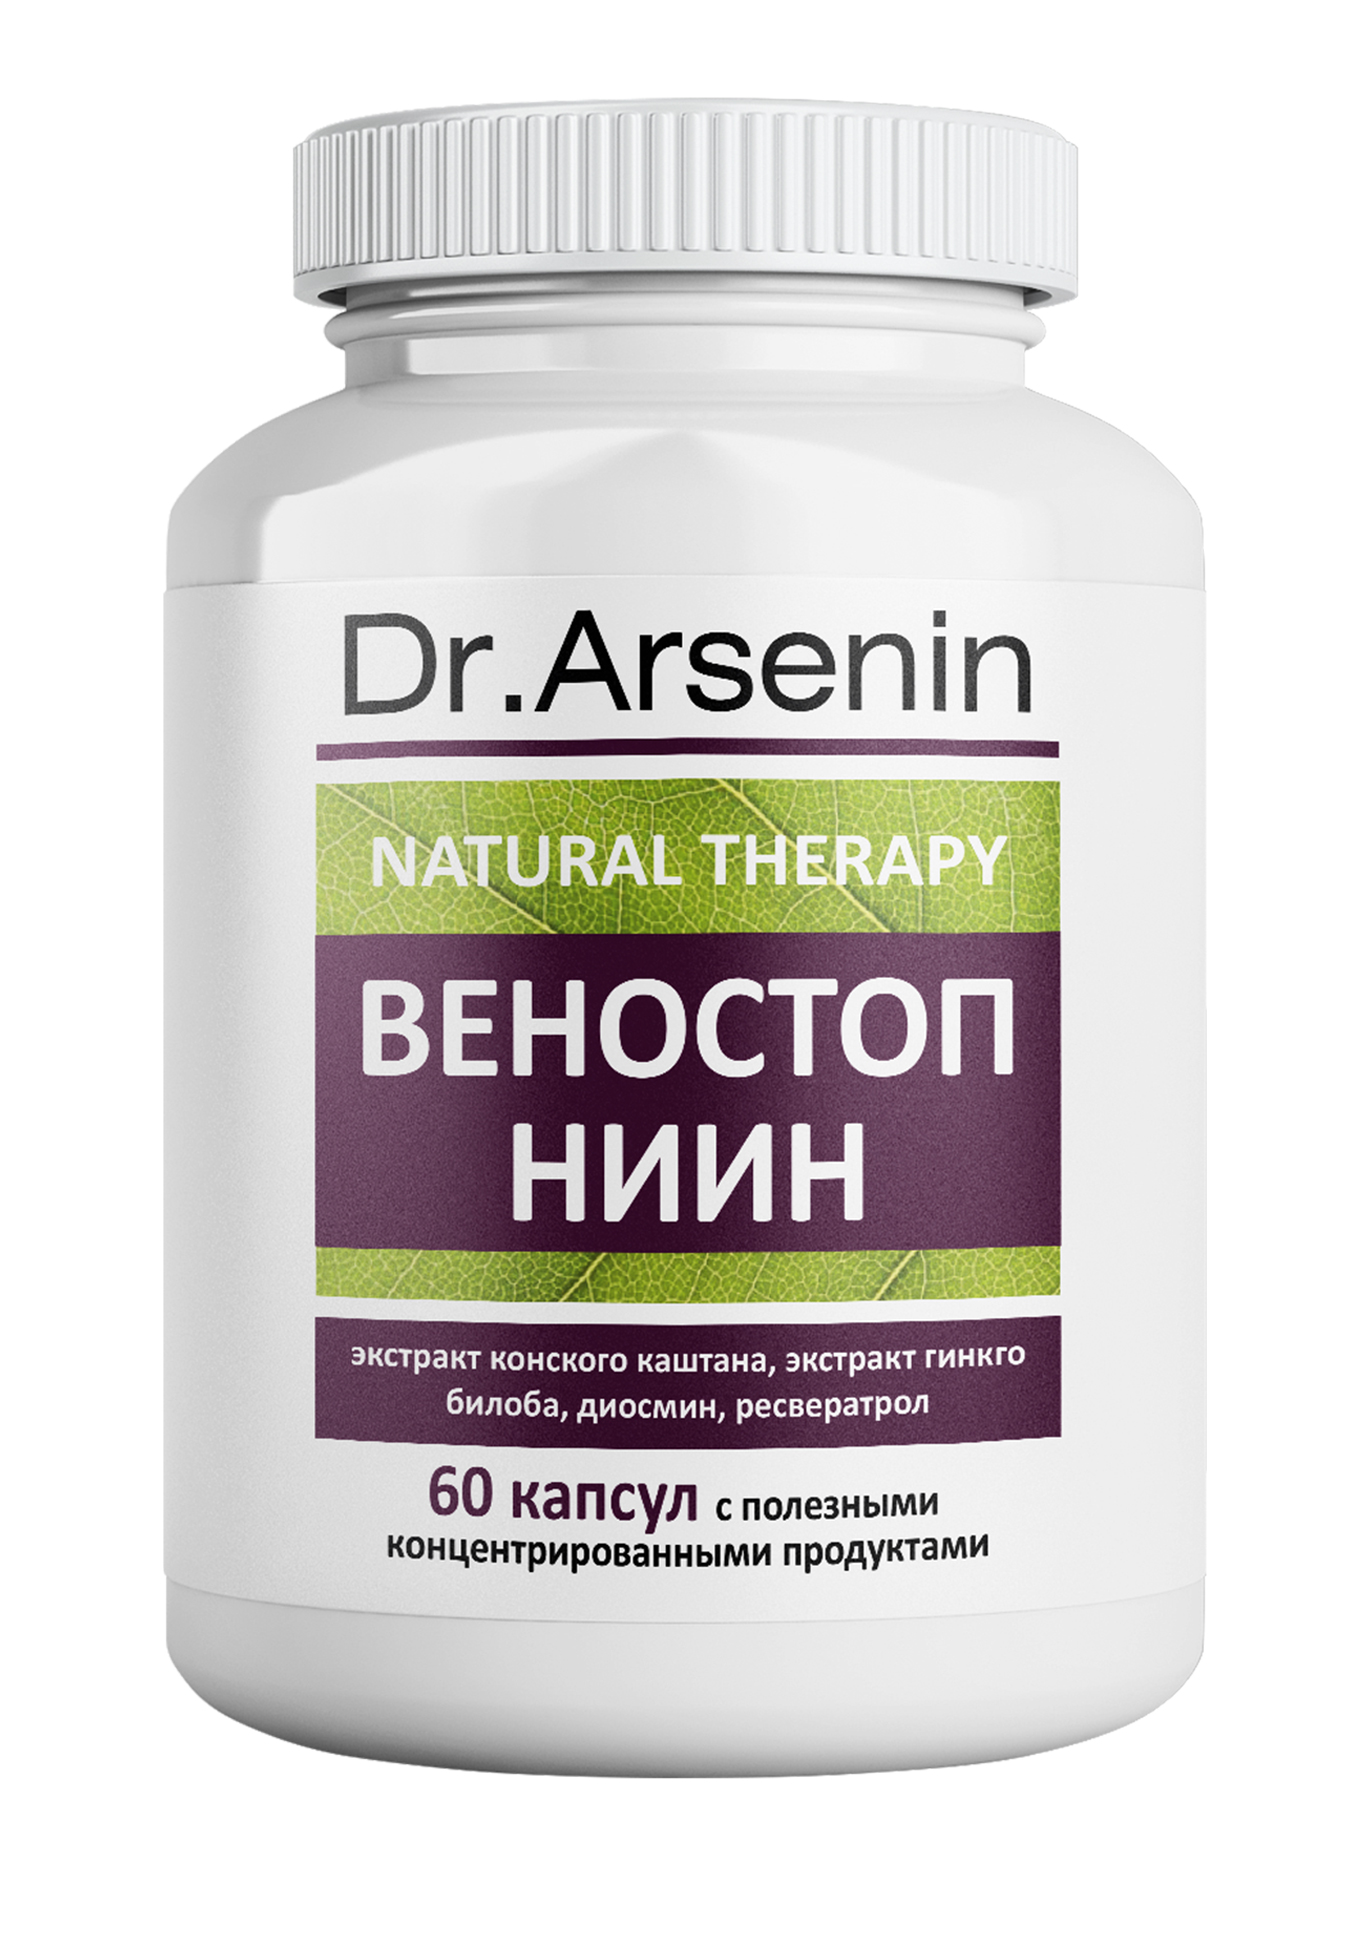 Dr. Arsenin. ВЕНОСТОП НИИН dr arsenin концентрированный пищевой продукт гепофильтр